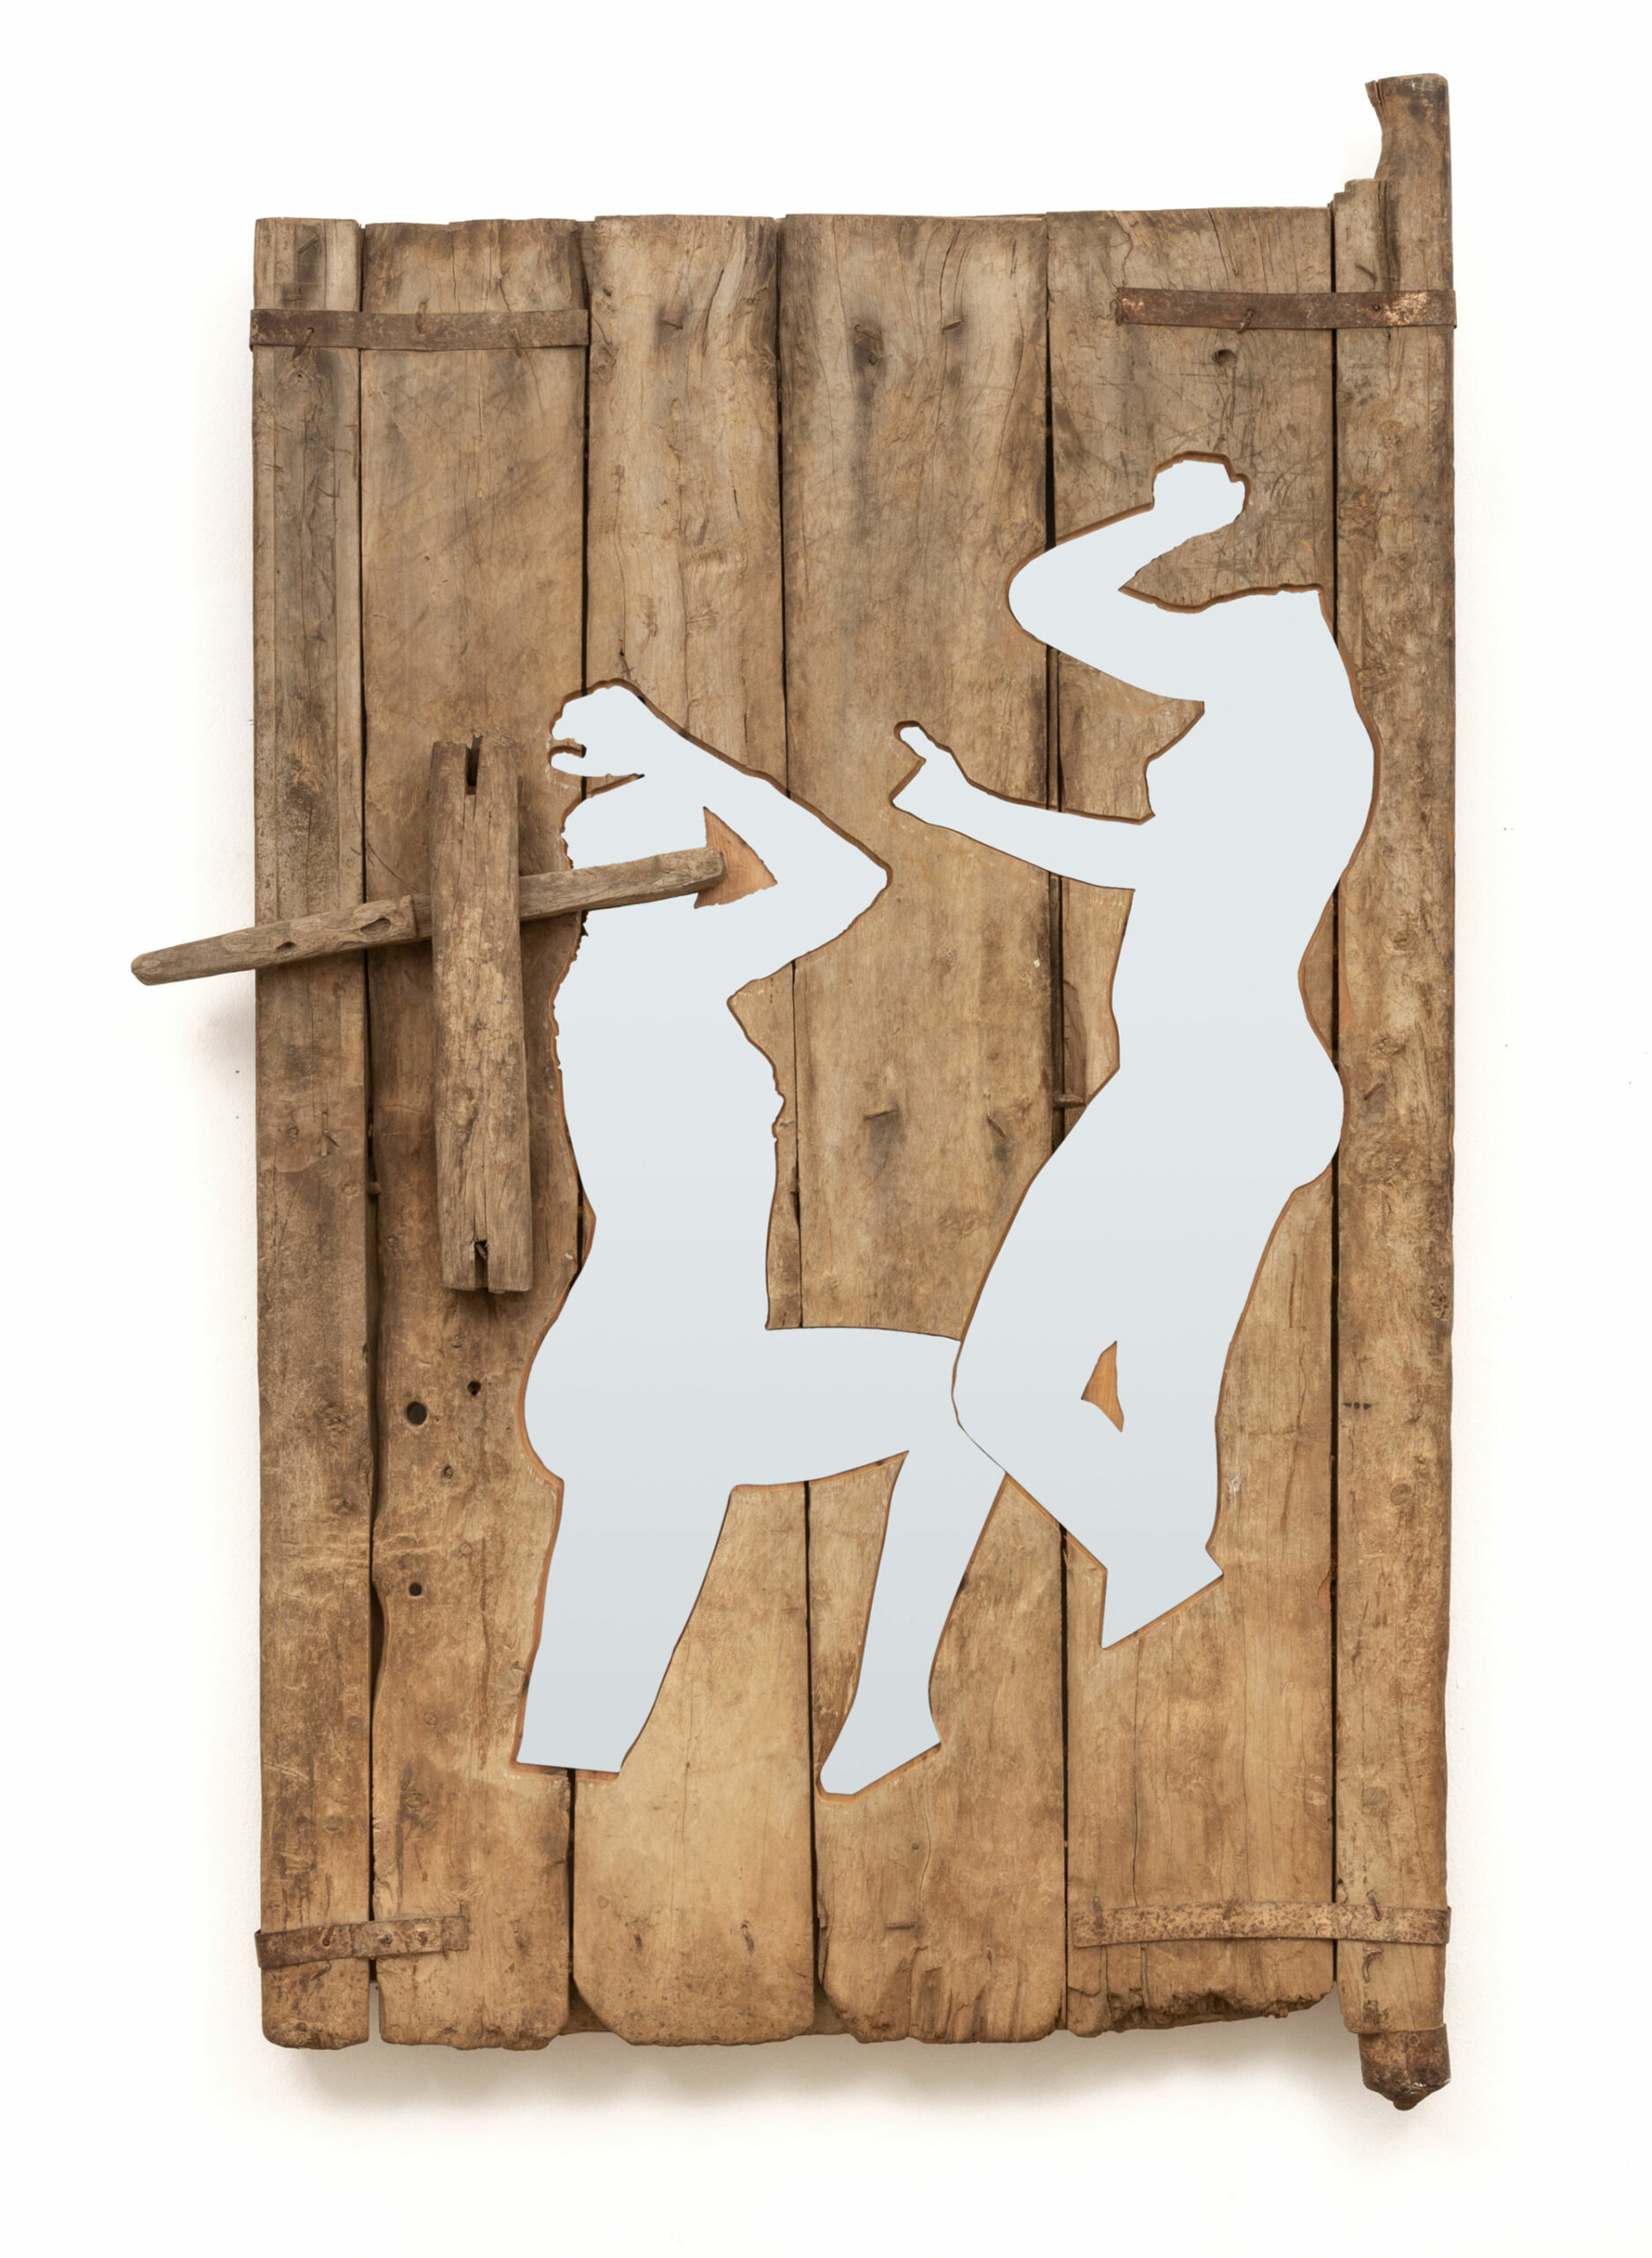 PORTE, OBJET DE FRONTIÈRE 1, 2021Portes traditionnelles en bois et découpe alucobond miroir170 x 124 x 11 cm